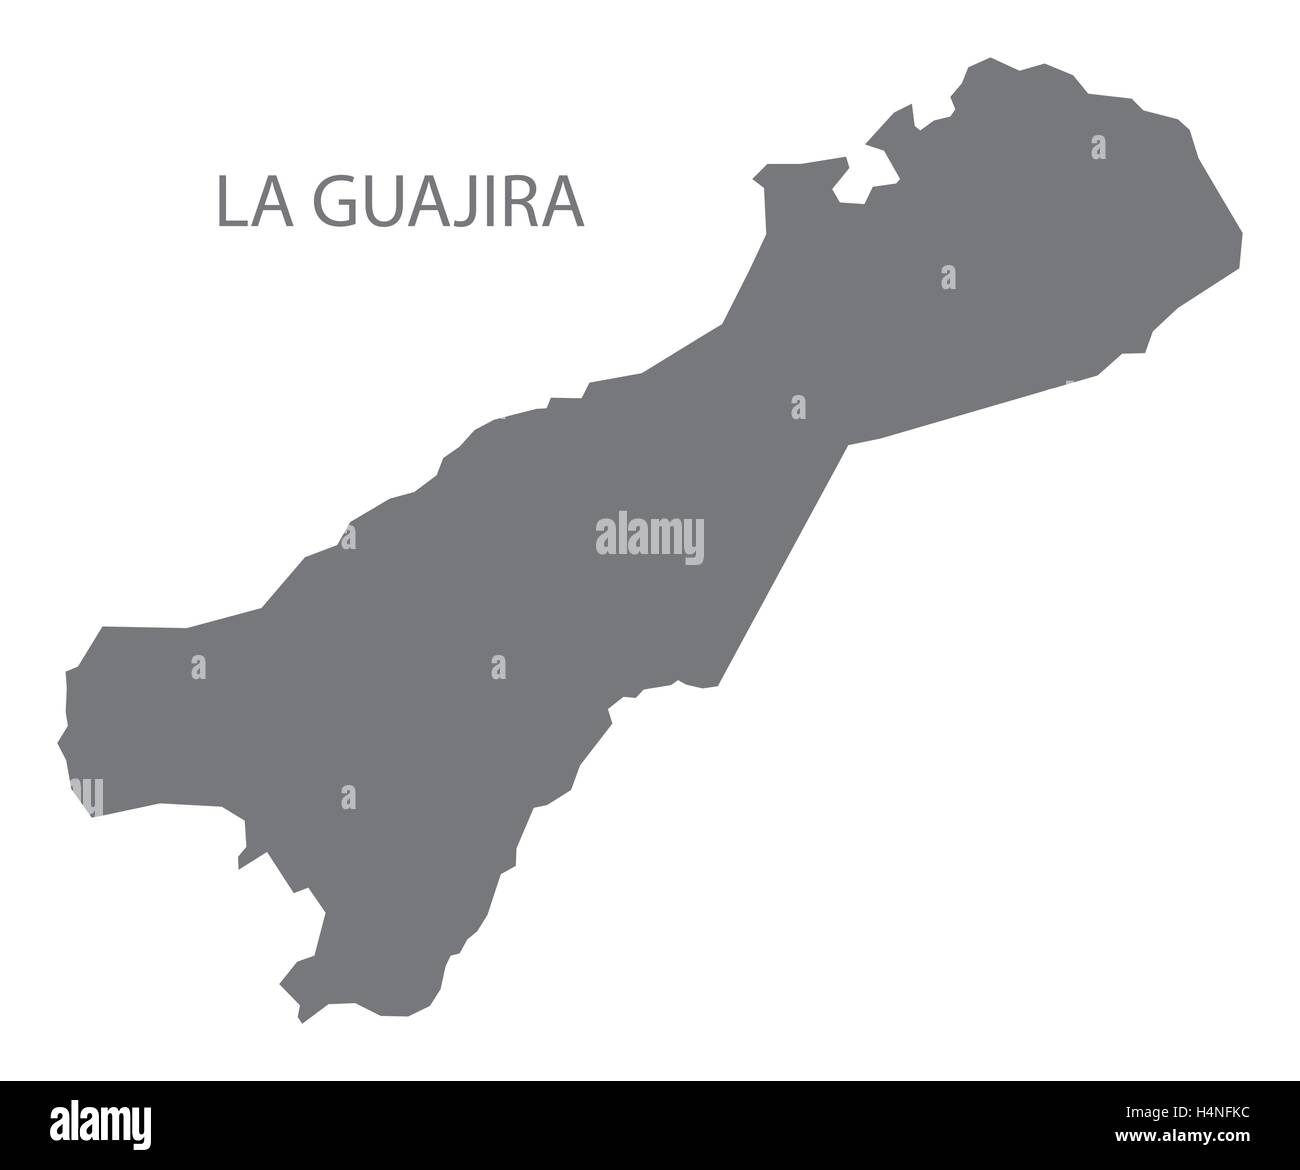 La Guajira Colombia Map in grey Stock Vector